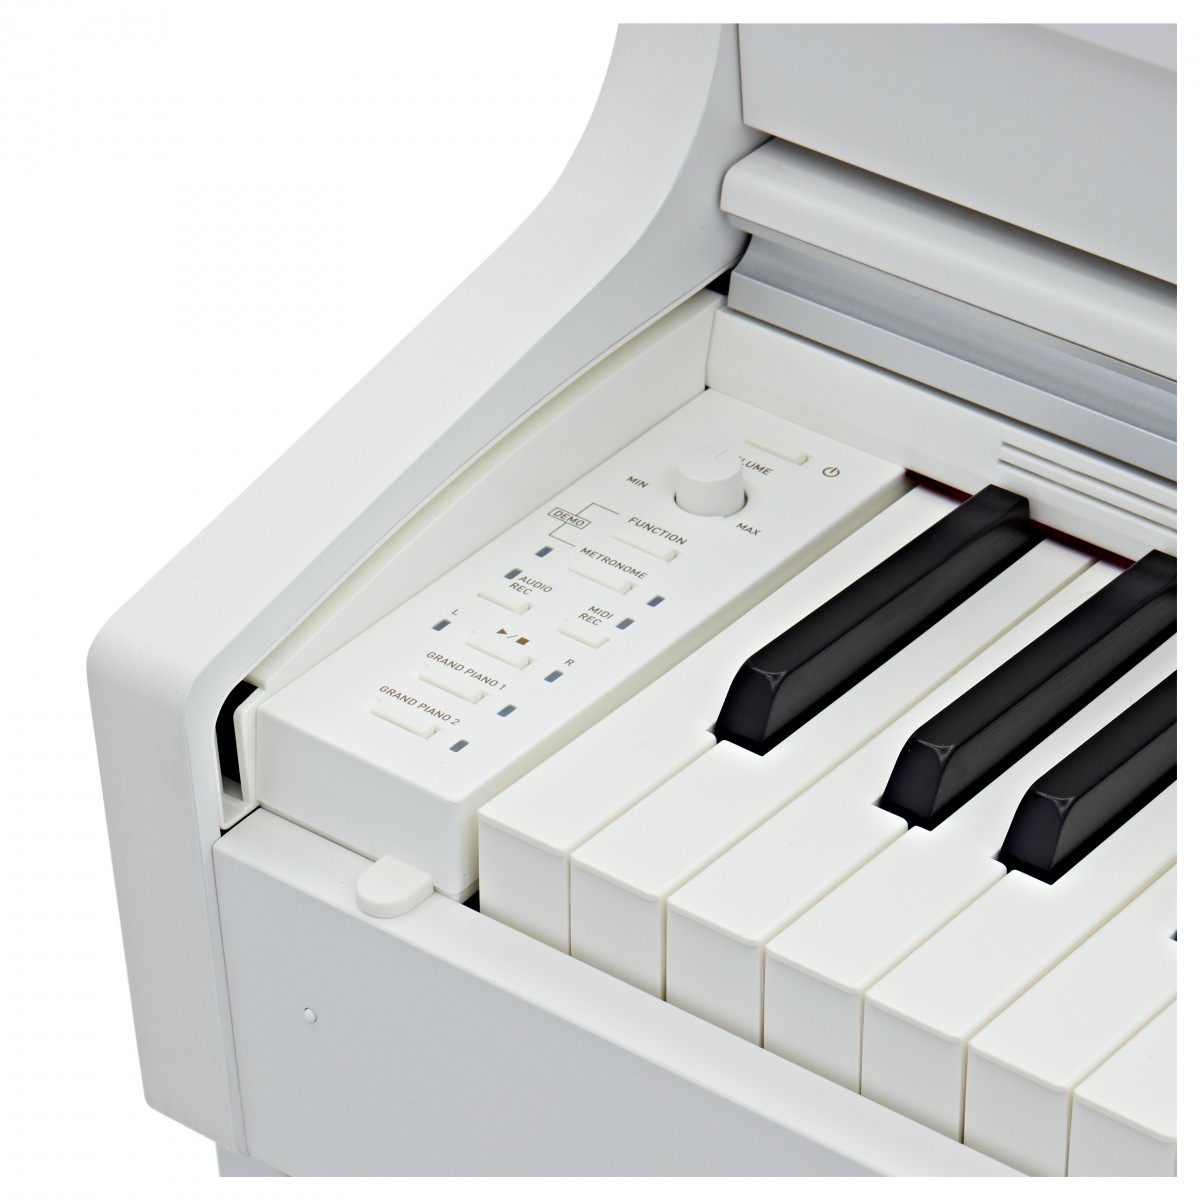 CASIO CELVIANO AP470 WE WHITE PIANOFORTE DIGITALE 88 TASTI COLORE BIANCO 5